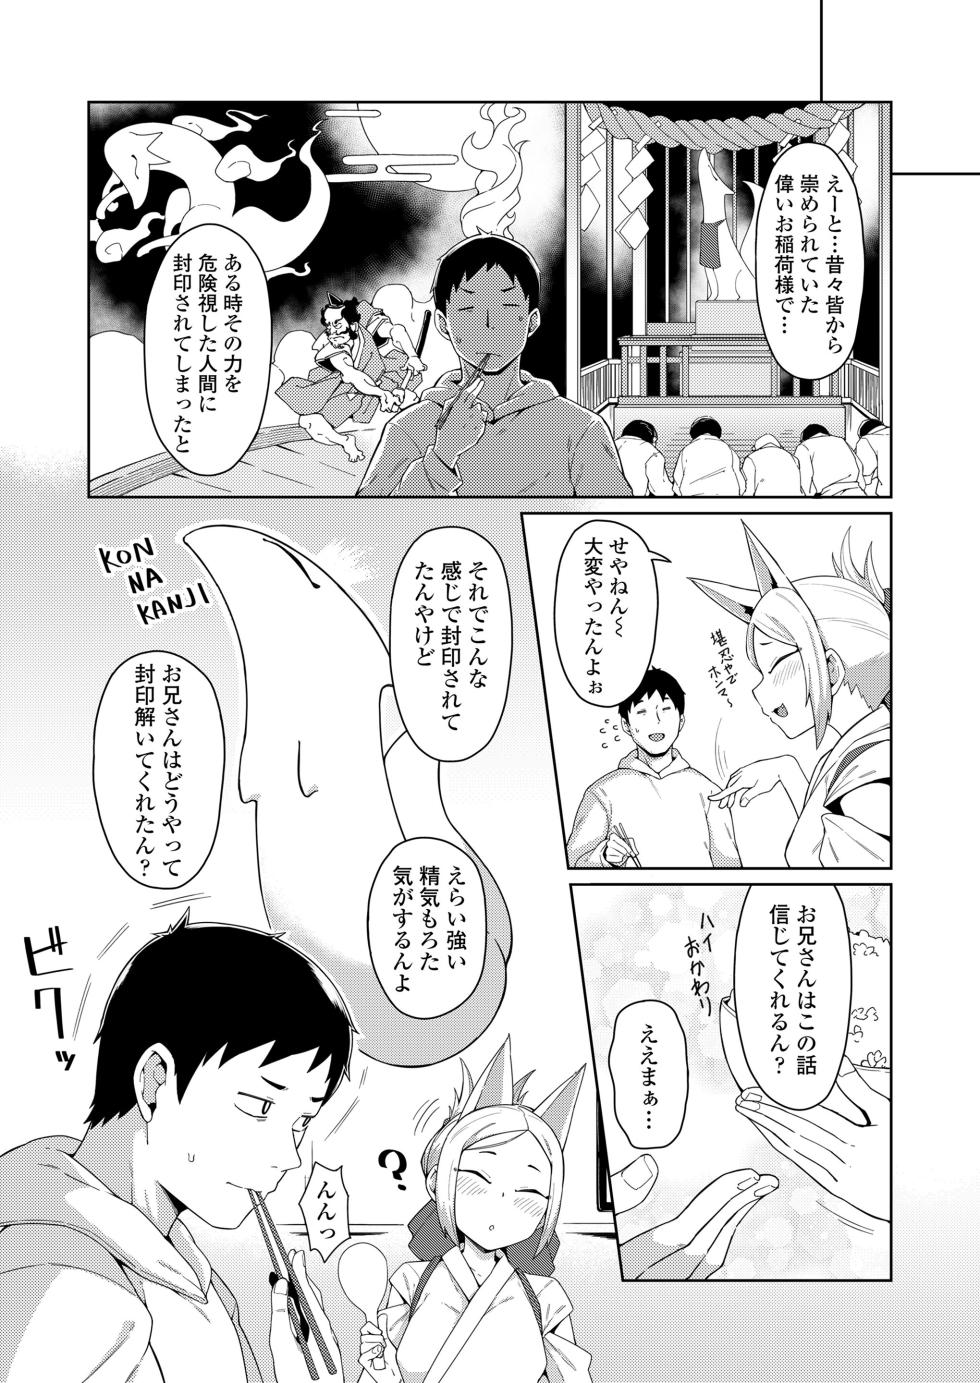 Towako 16 [Digital] - Page 26